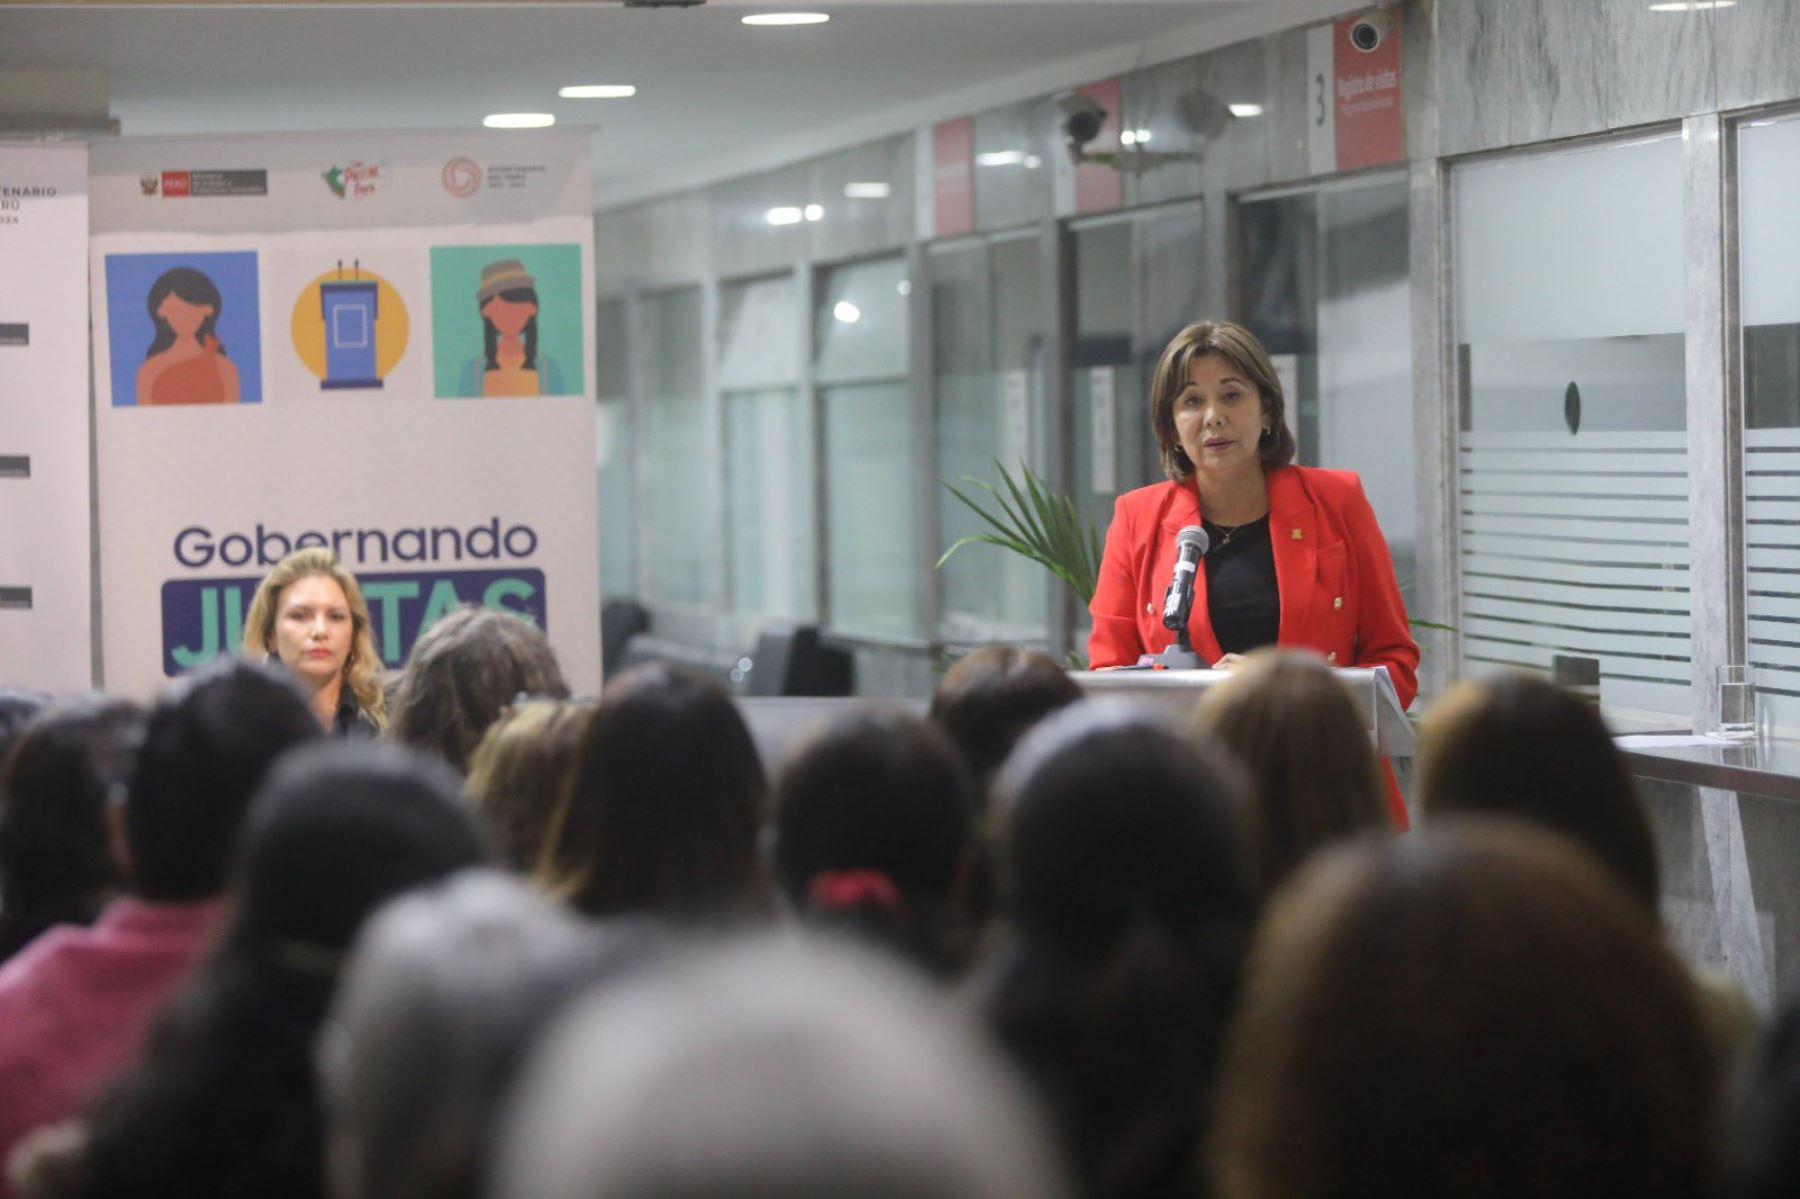 La ministra de la Mujer, Nancy Tolentino, informó que el diplomado fue lanzado mediante el proyecto Gobernando Juntas, para promover la equidad de oportunidades entre hombres y mujeres en espacios de liderazgo. ANDINA/ MIMP.